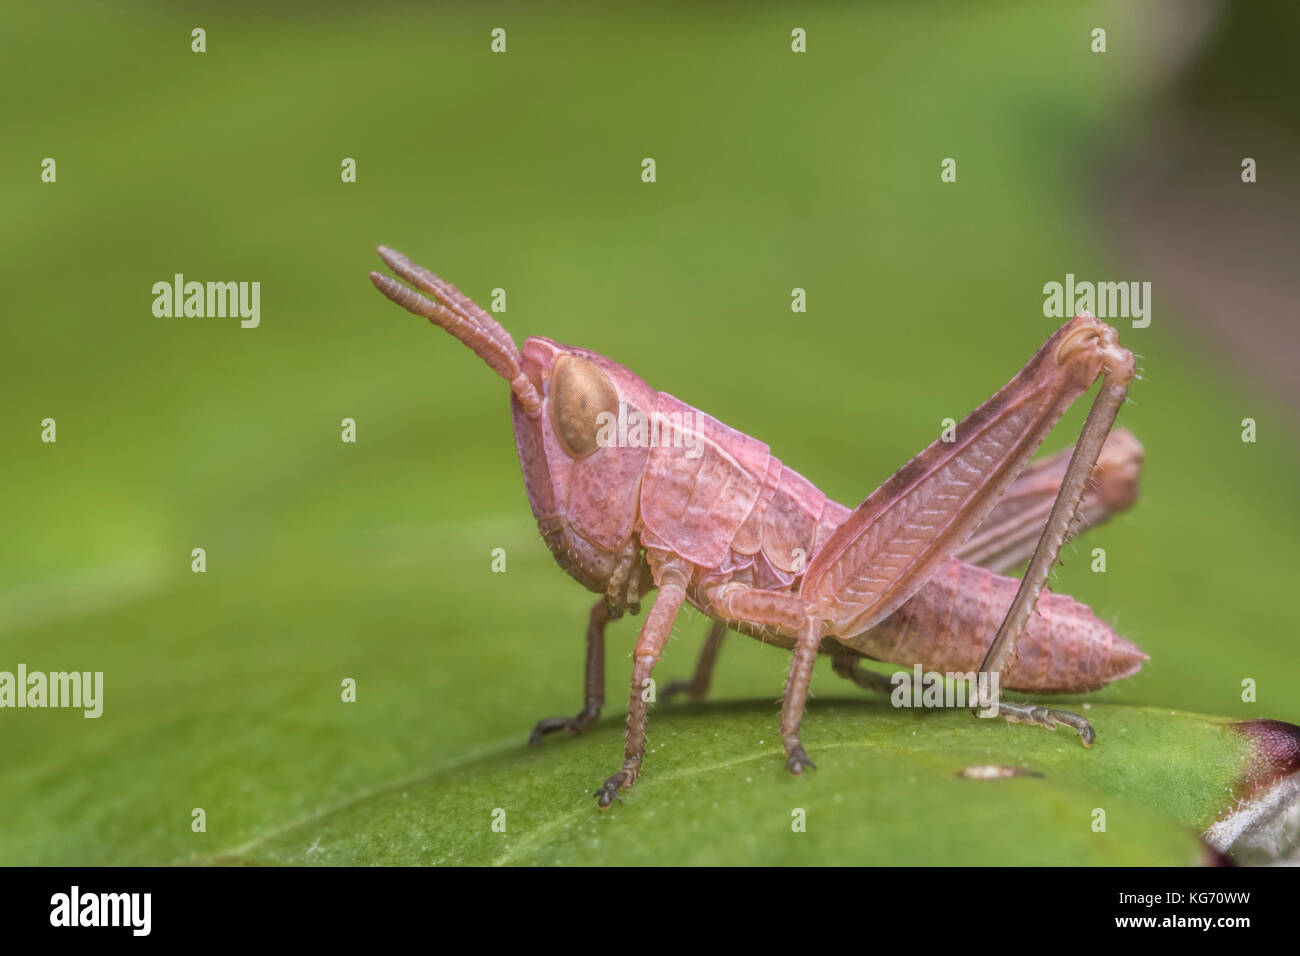 Grasshopper Nymphe auf Blatt. Tipperary, Irland Stockfoto